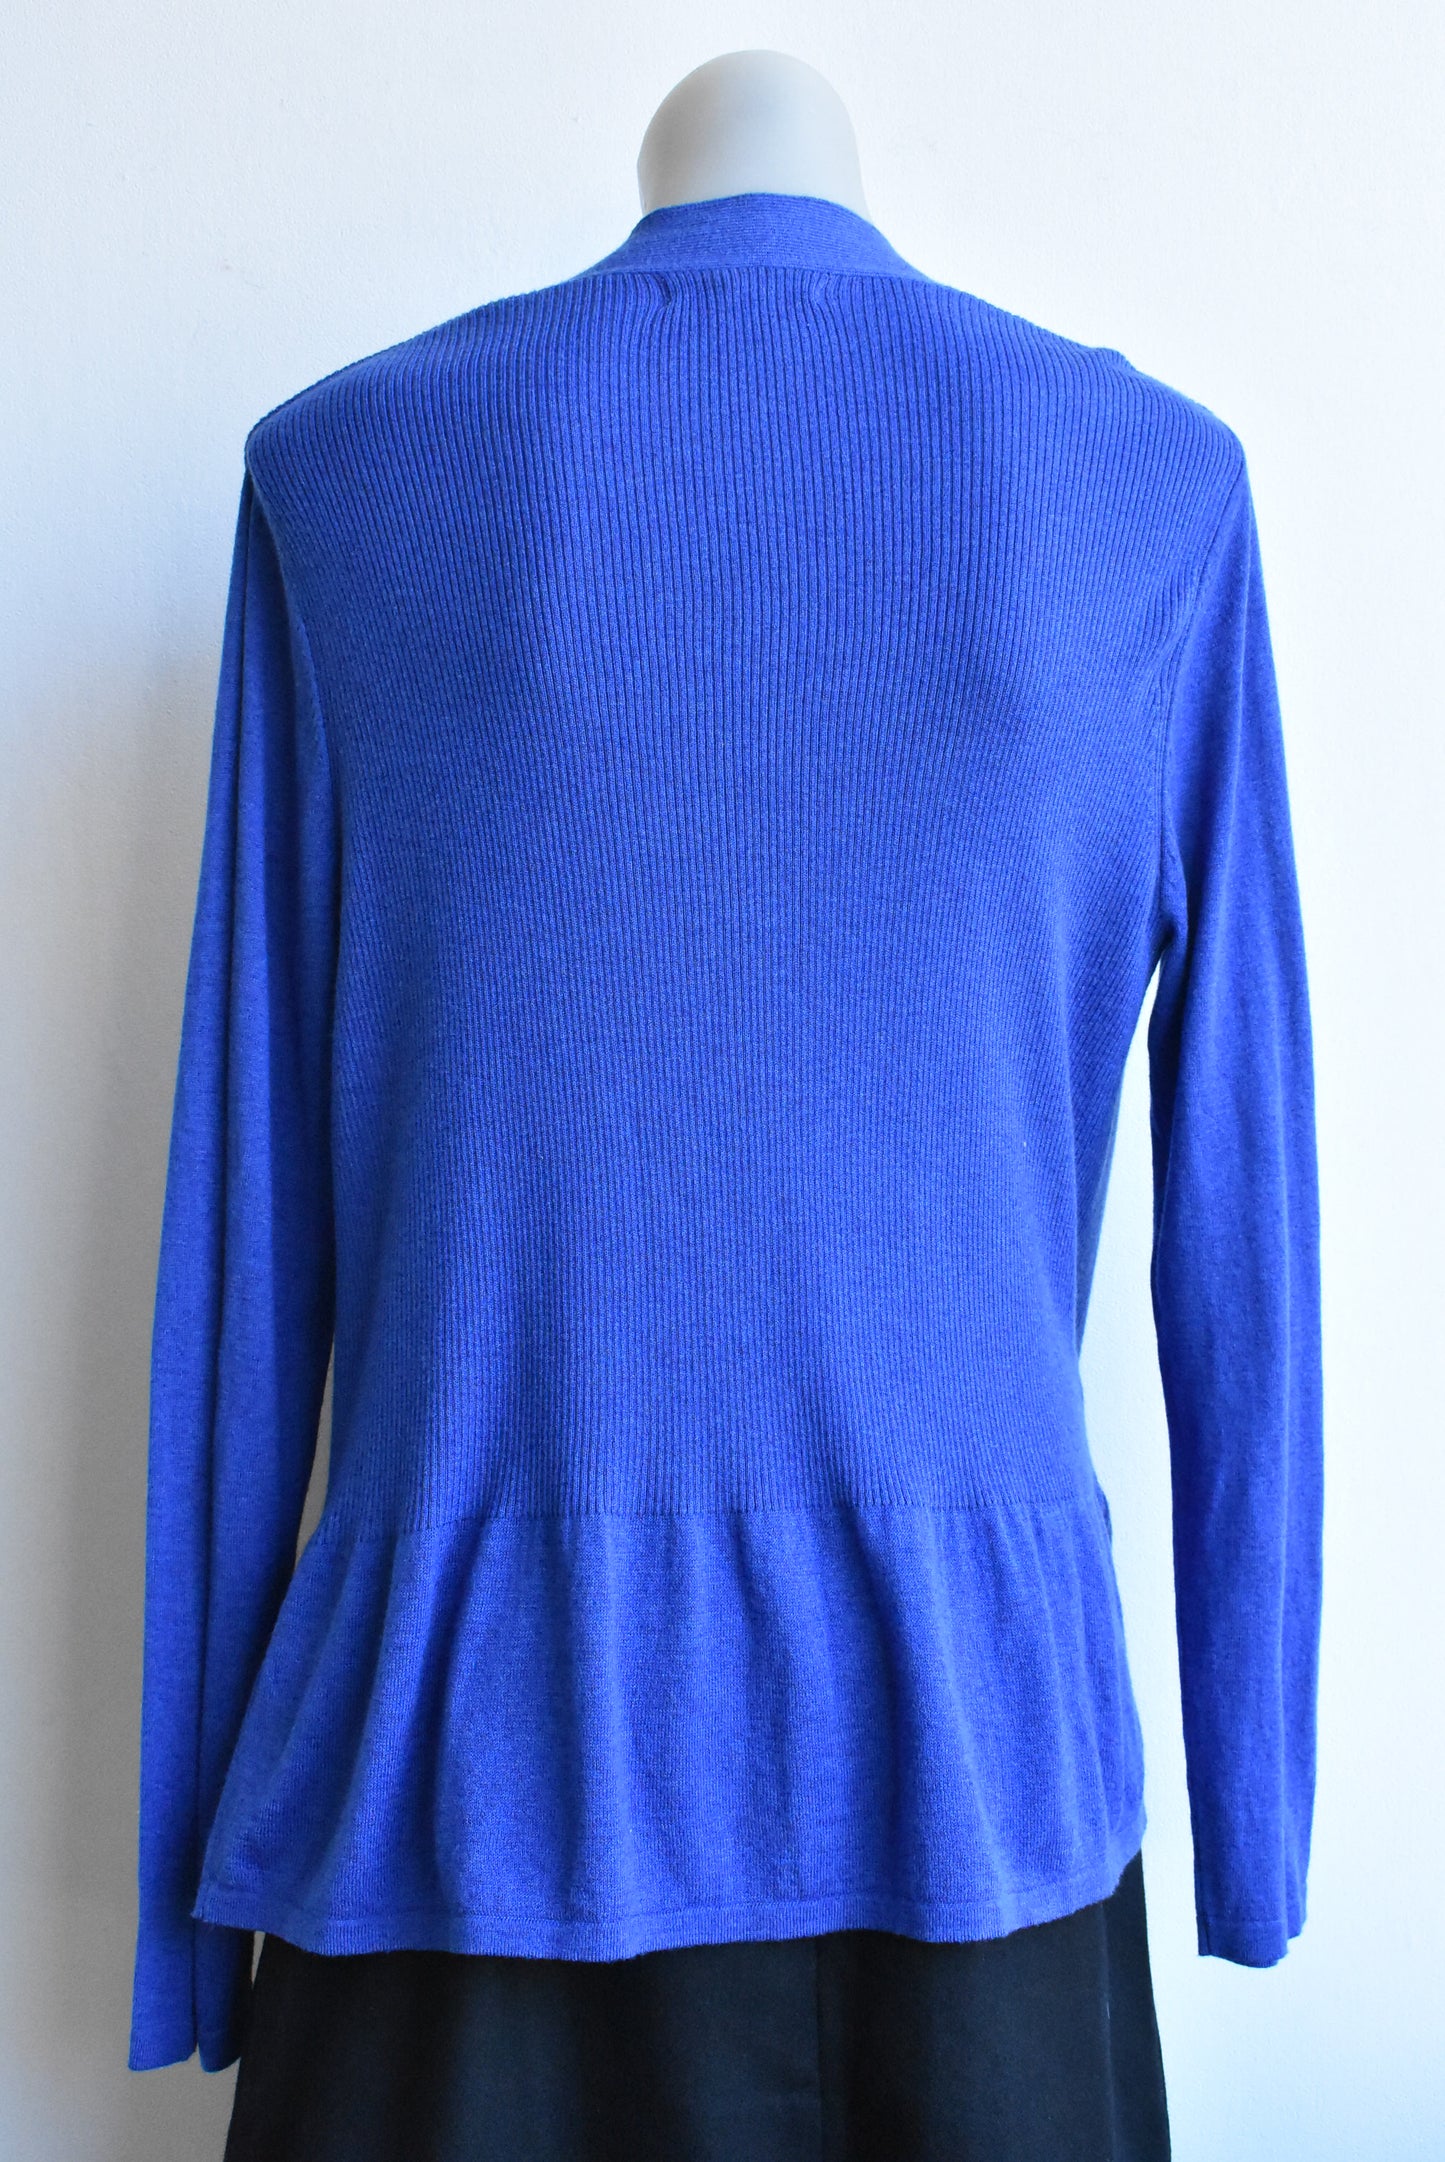 August Silk blue frilled cardigan, XL (NWT)